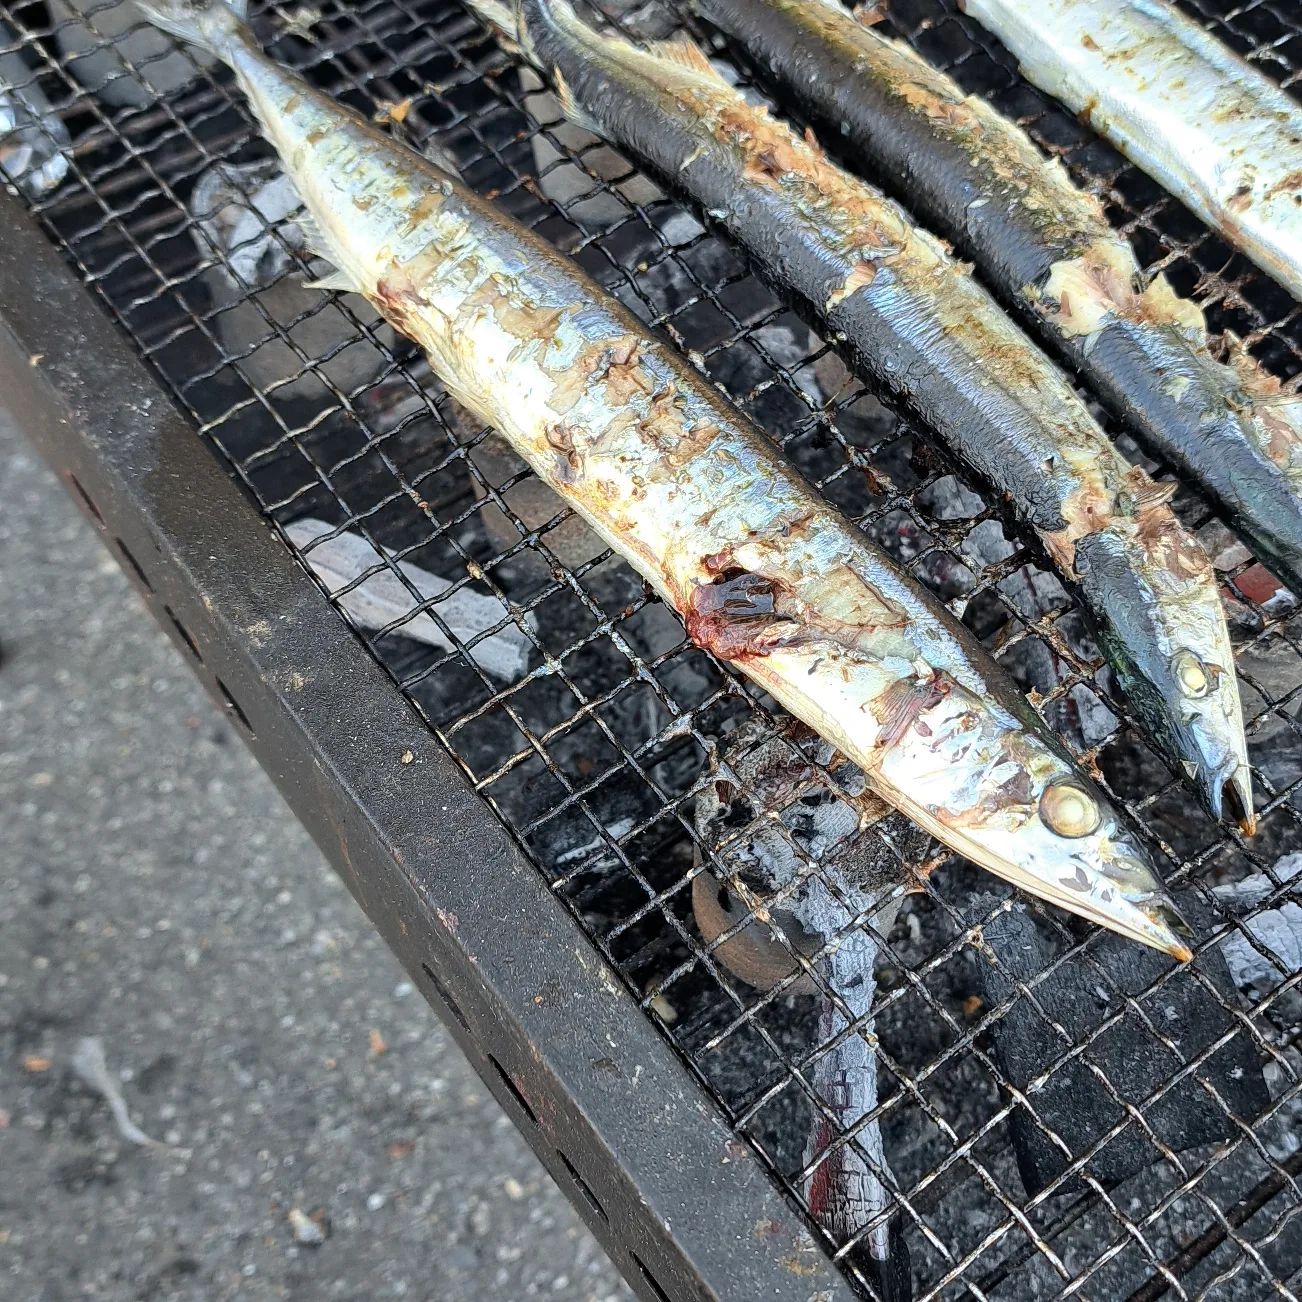 秋刀魚祭り　ウエルハイムヨコゼの秋の恒例行事『秋刀魚祭り』を開催いたしました。炭火で焼き上げた秋刀魚は今年も絶品でしたよ。#ウエルハイムヨコゼ #横瀬町 #秩父 #さんま #秋刀魚祭り